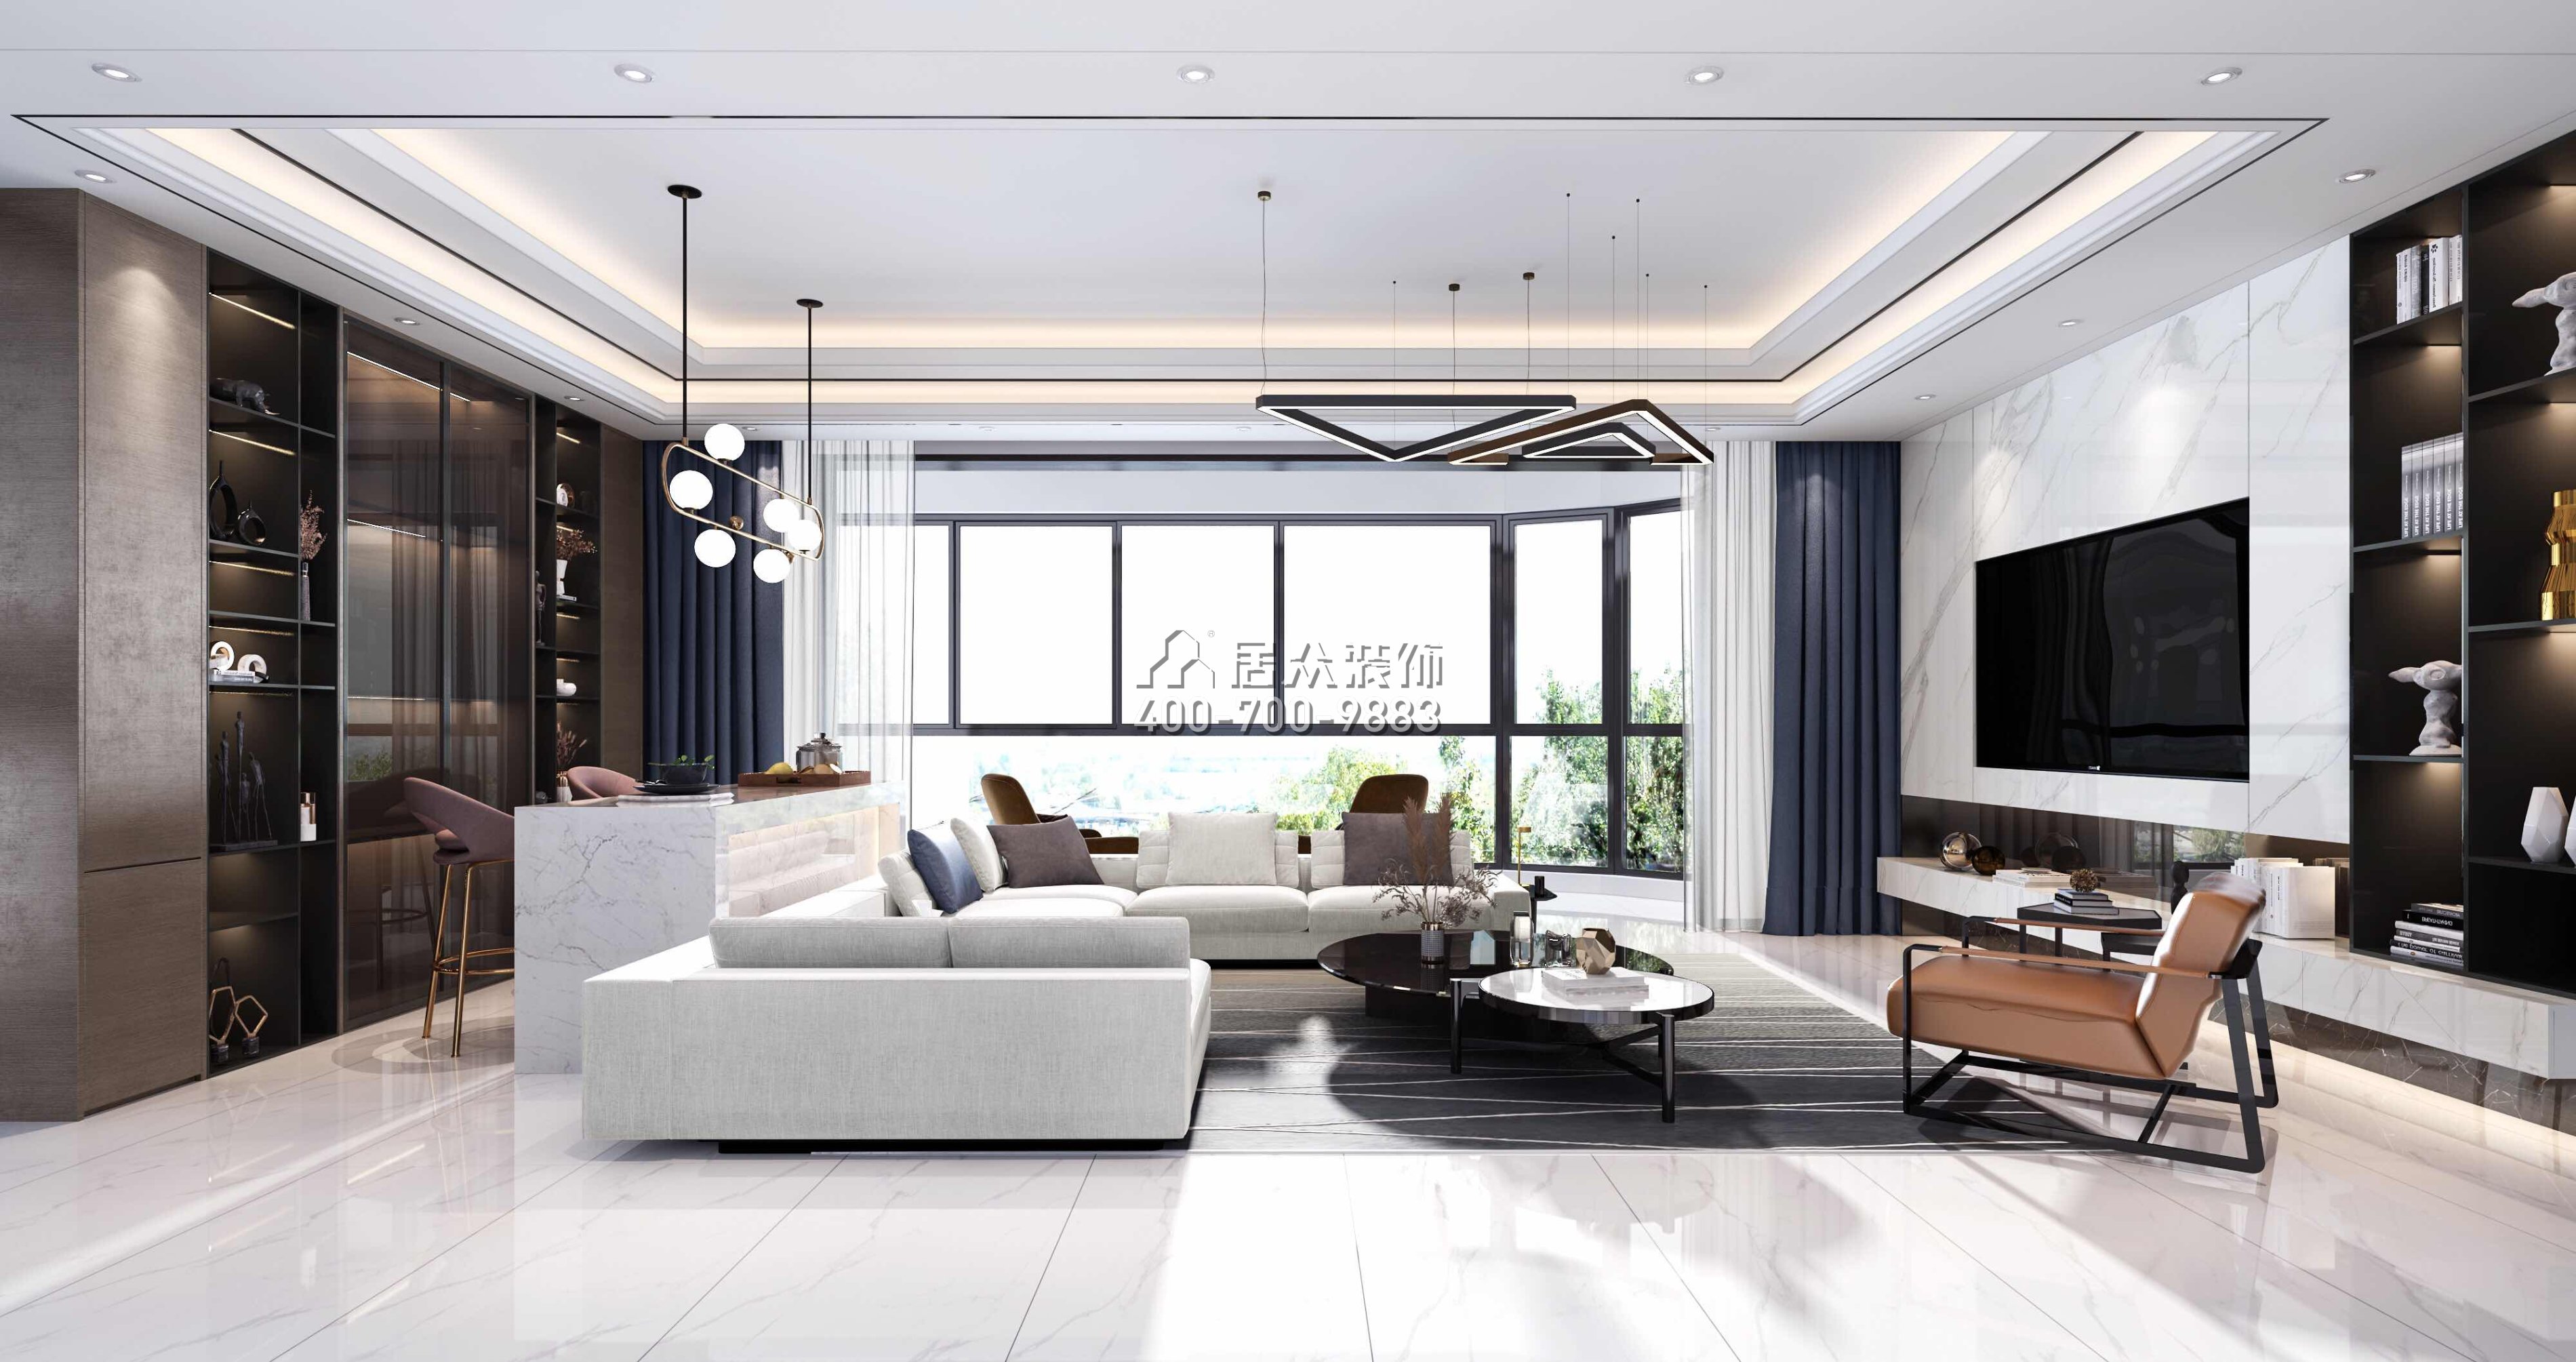 華發廣場悅海灣150平方米現代簡約風格平層戶型客廳裝修效果圖